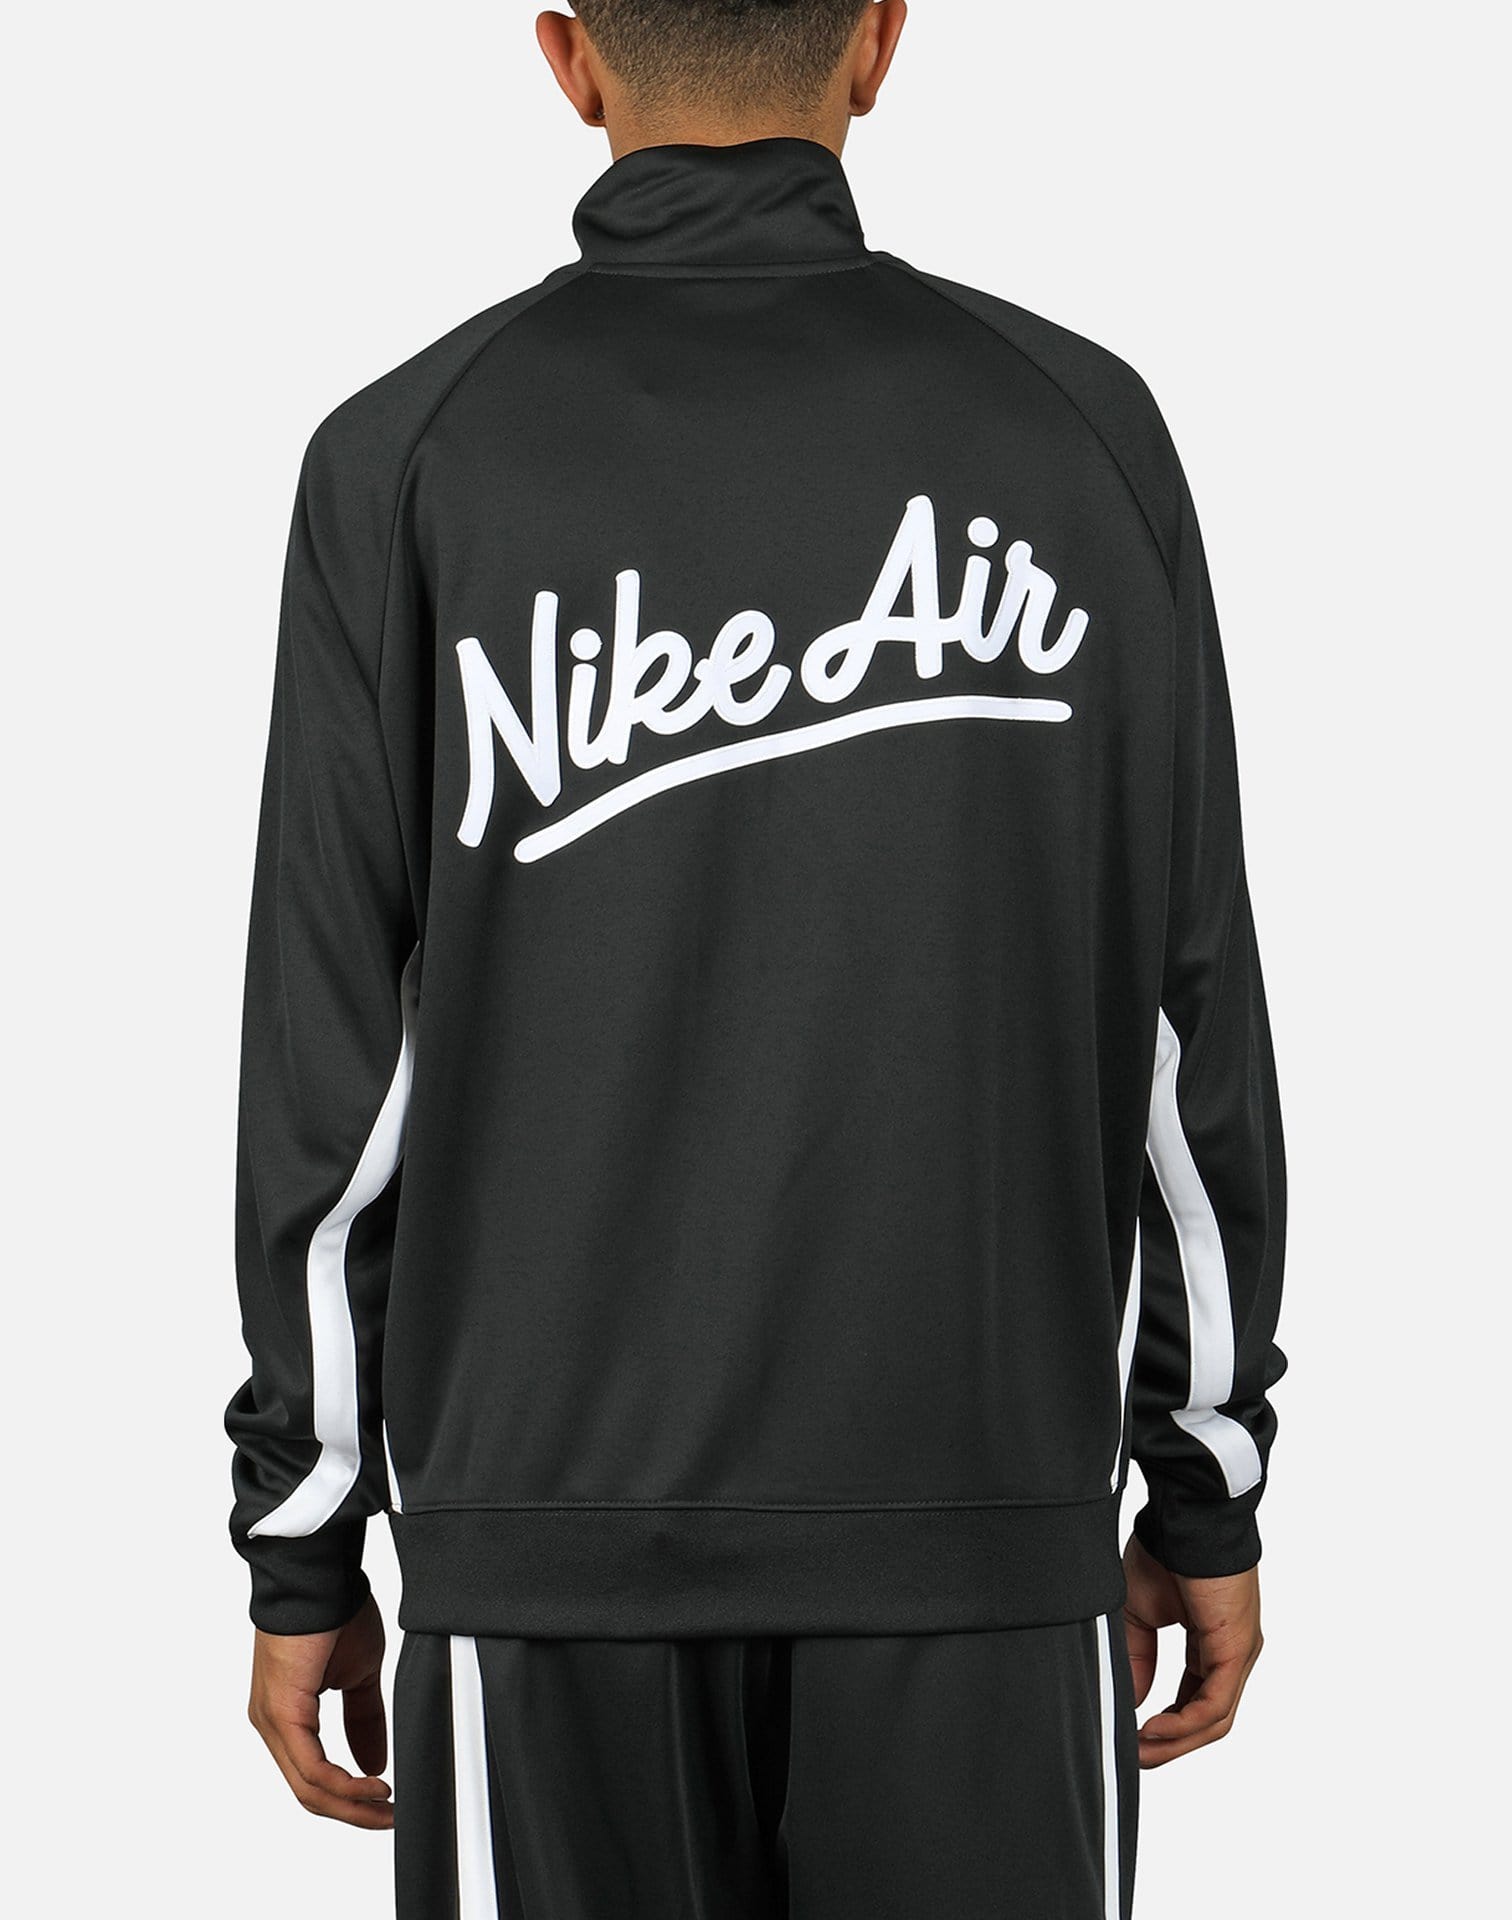 Nike Men's NSW Nike Air Jacket